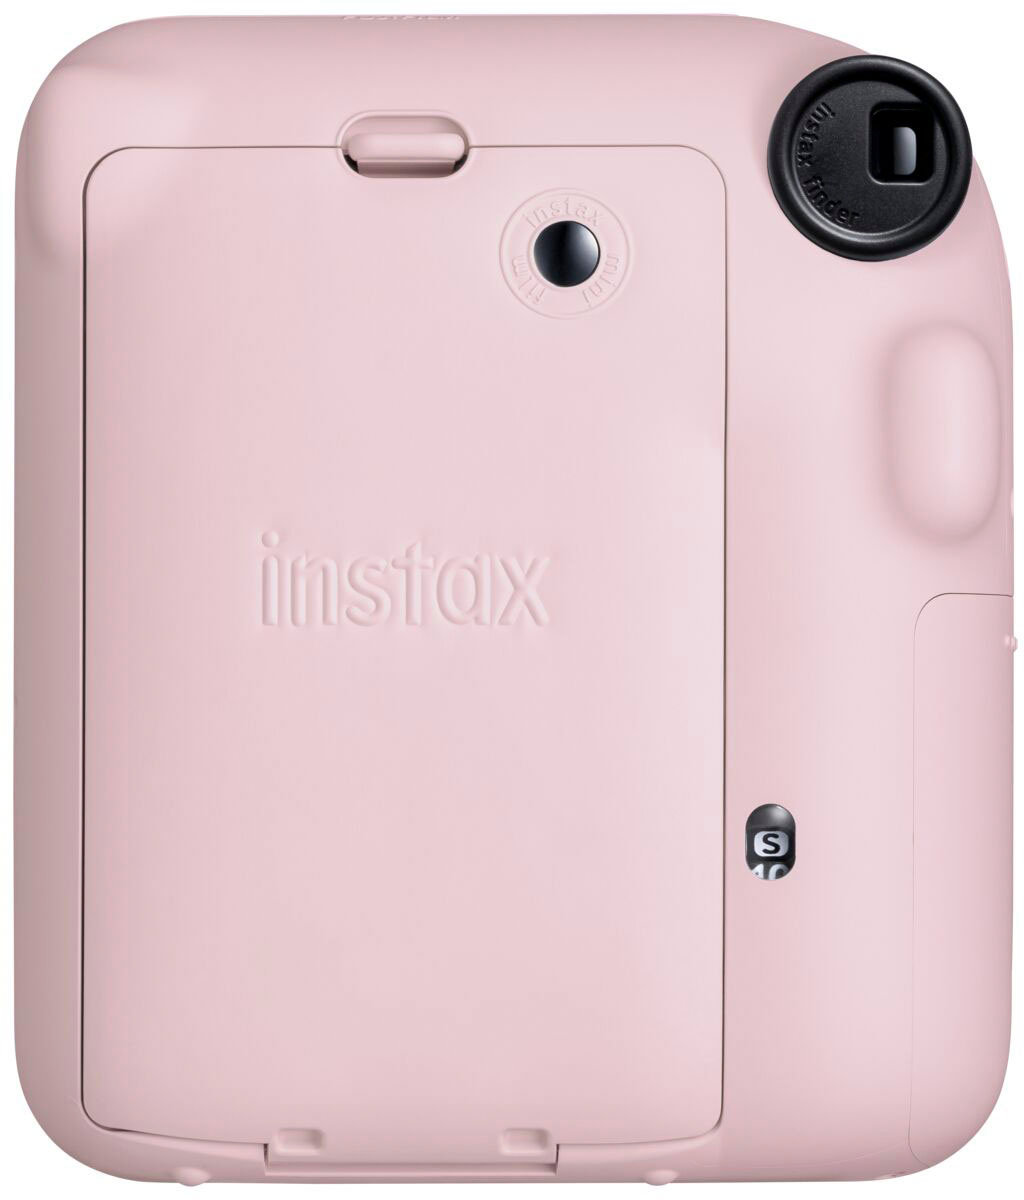 Back View: Fujifilm - Instax Mini 12 Instant Film Camera - Pink